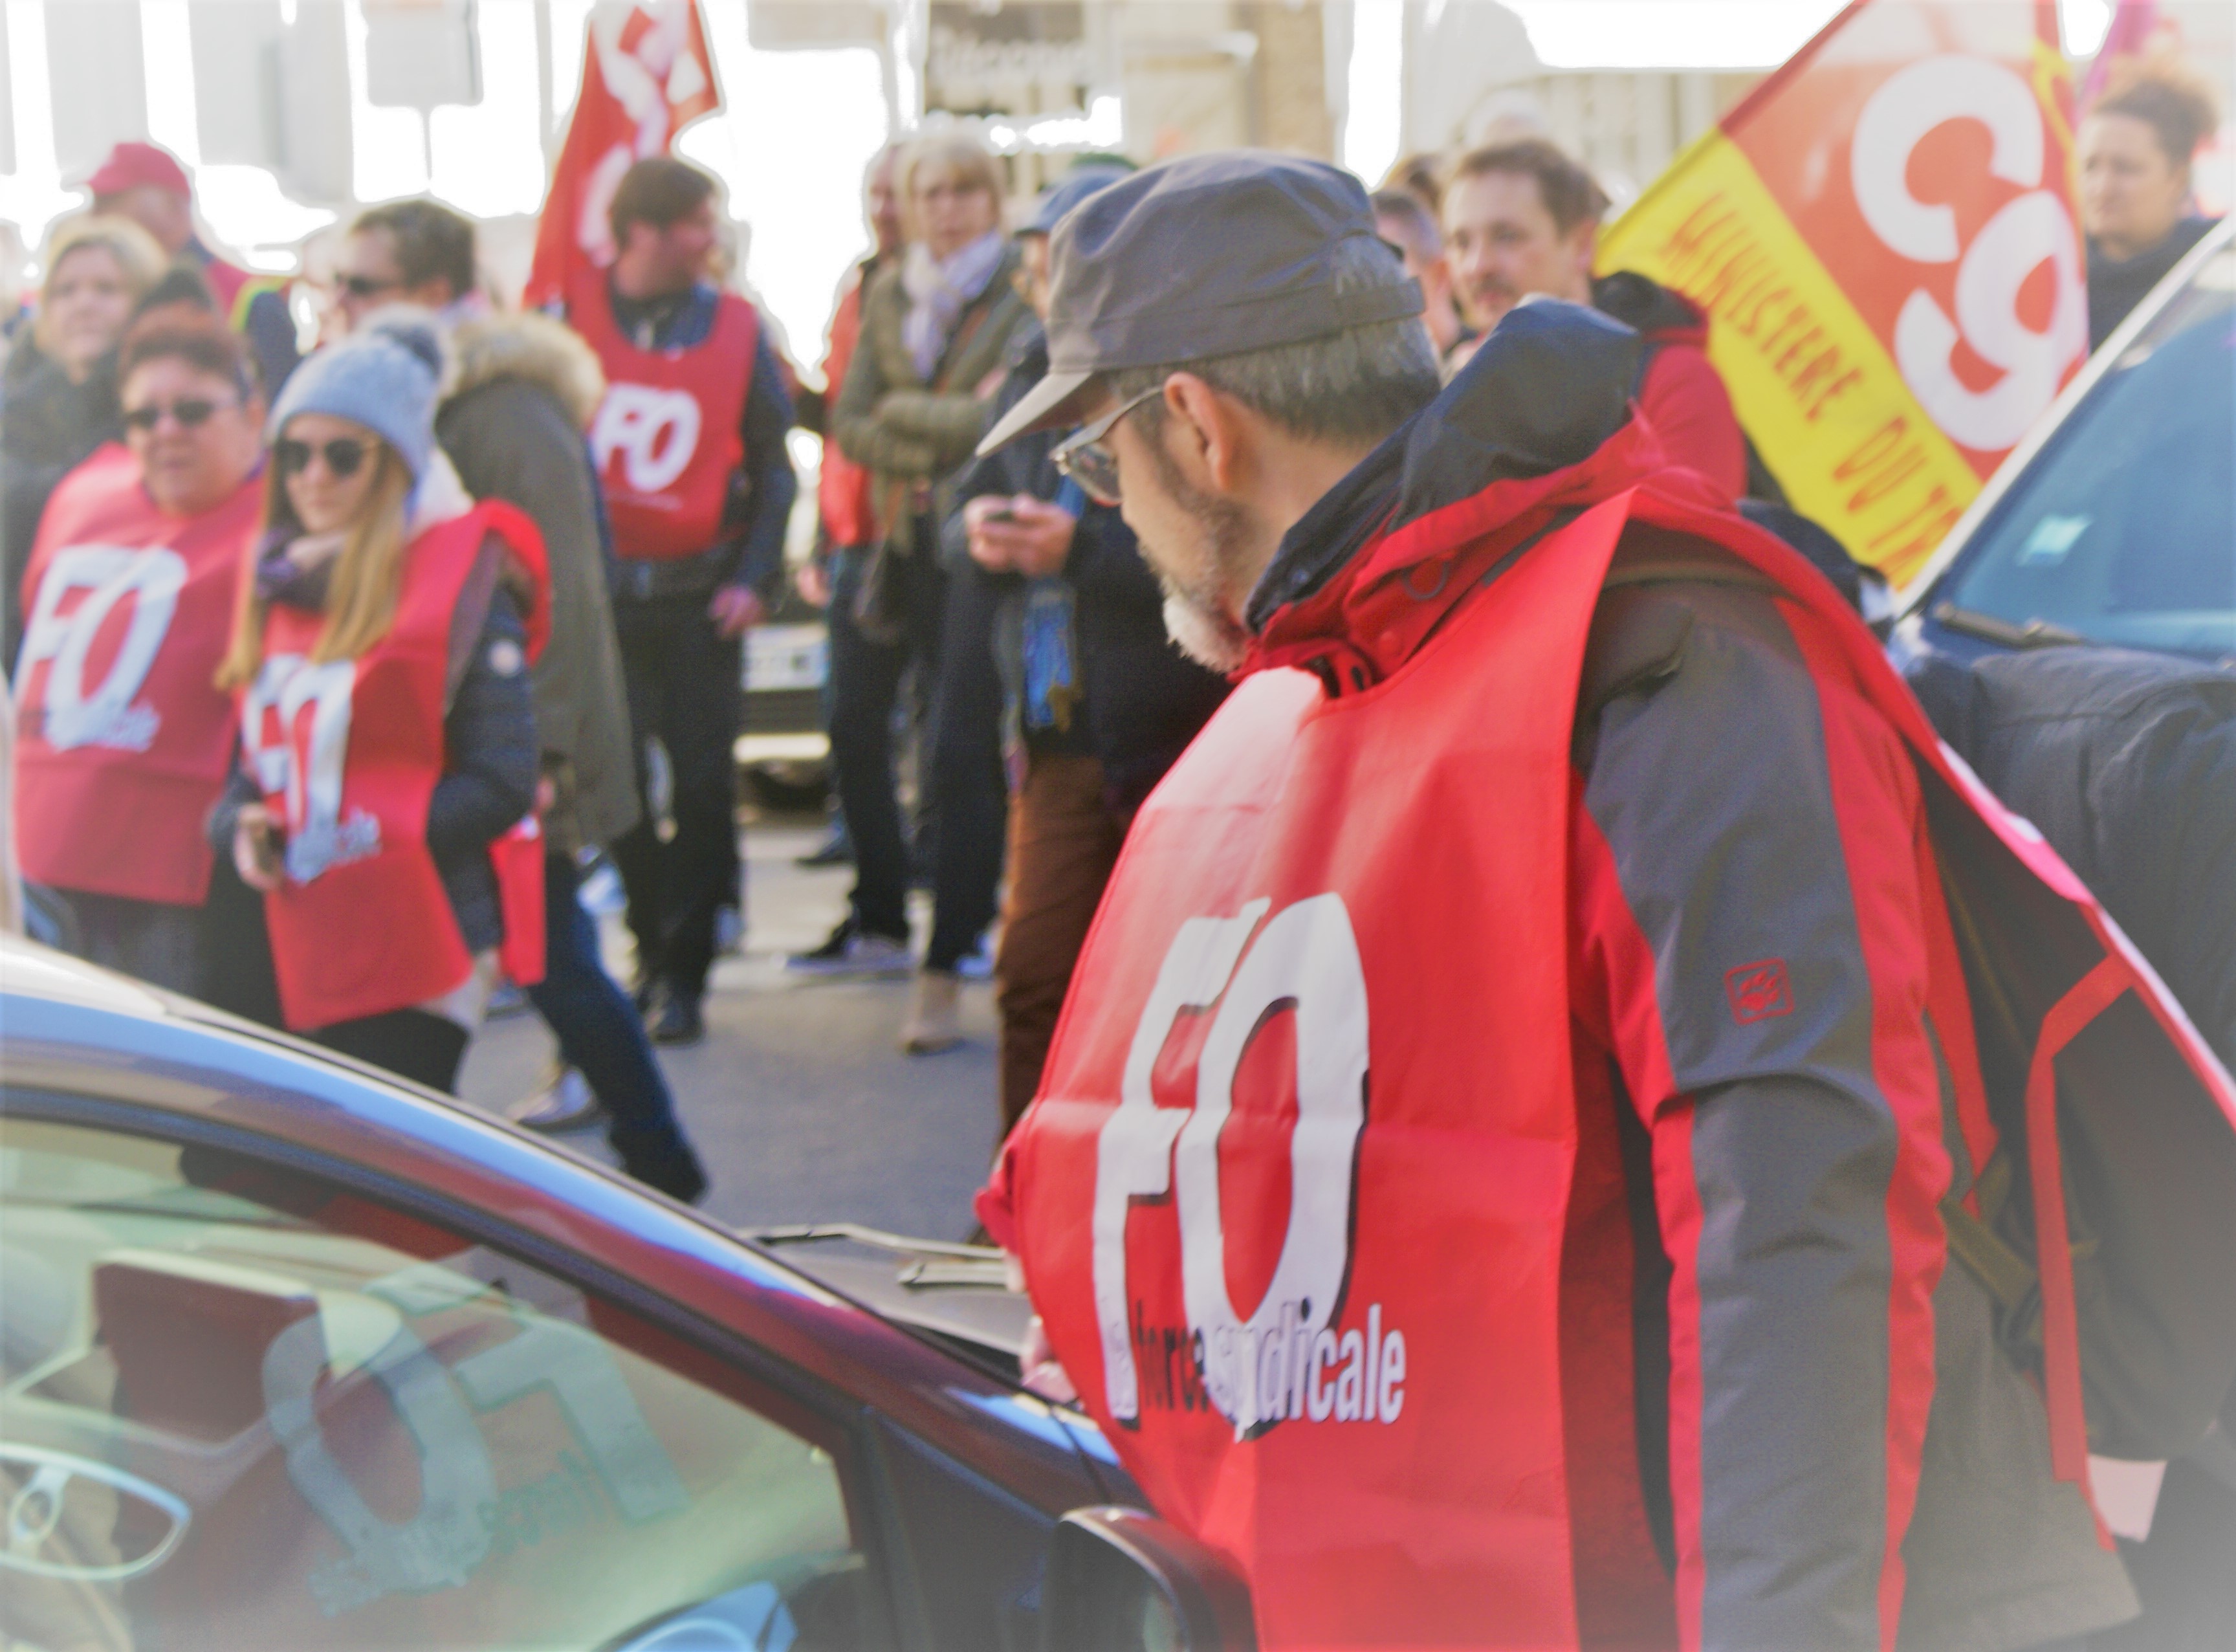 Grève et Mobilisation Générale à Reims le 19 mars 2019